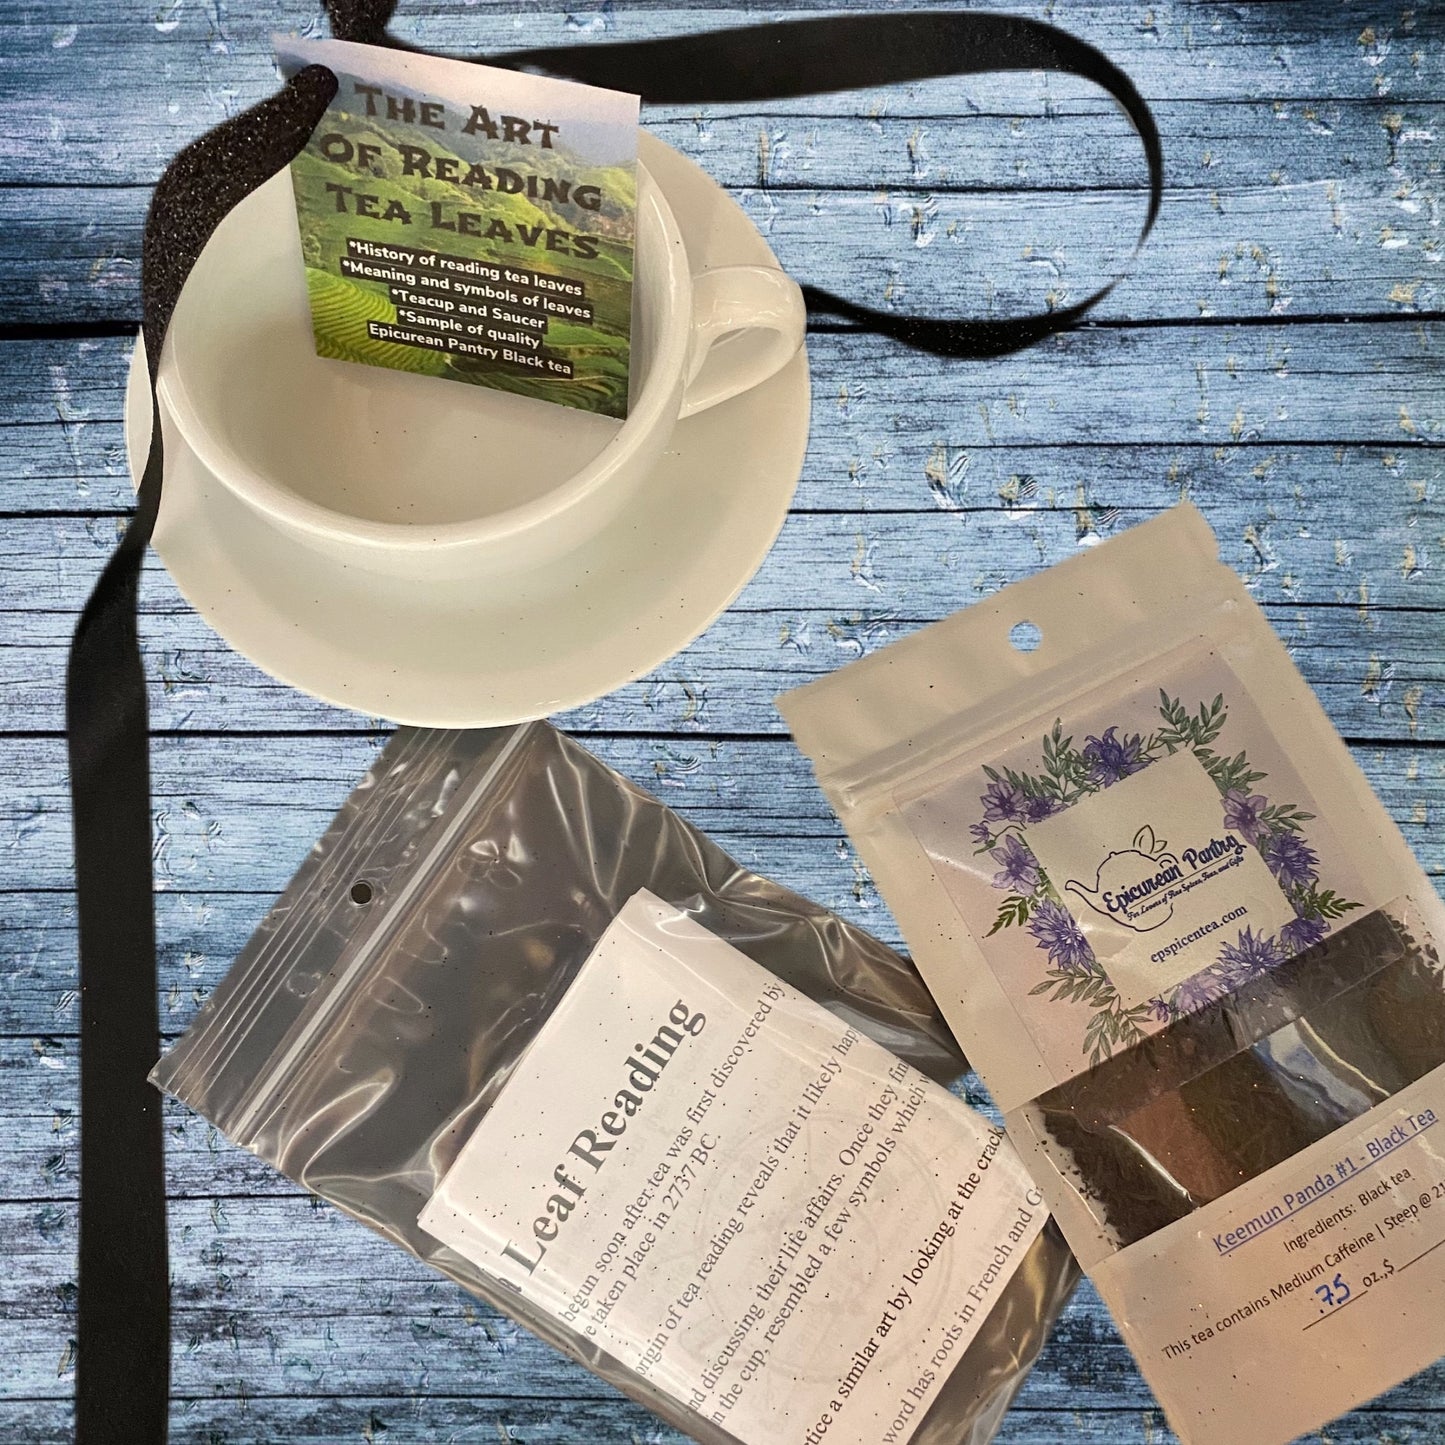 Tea leaf reading kit